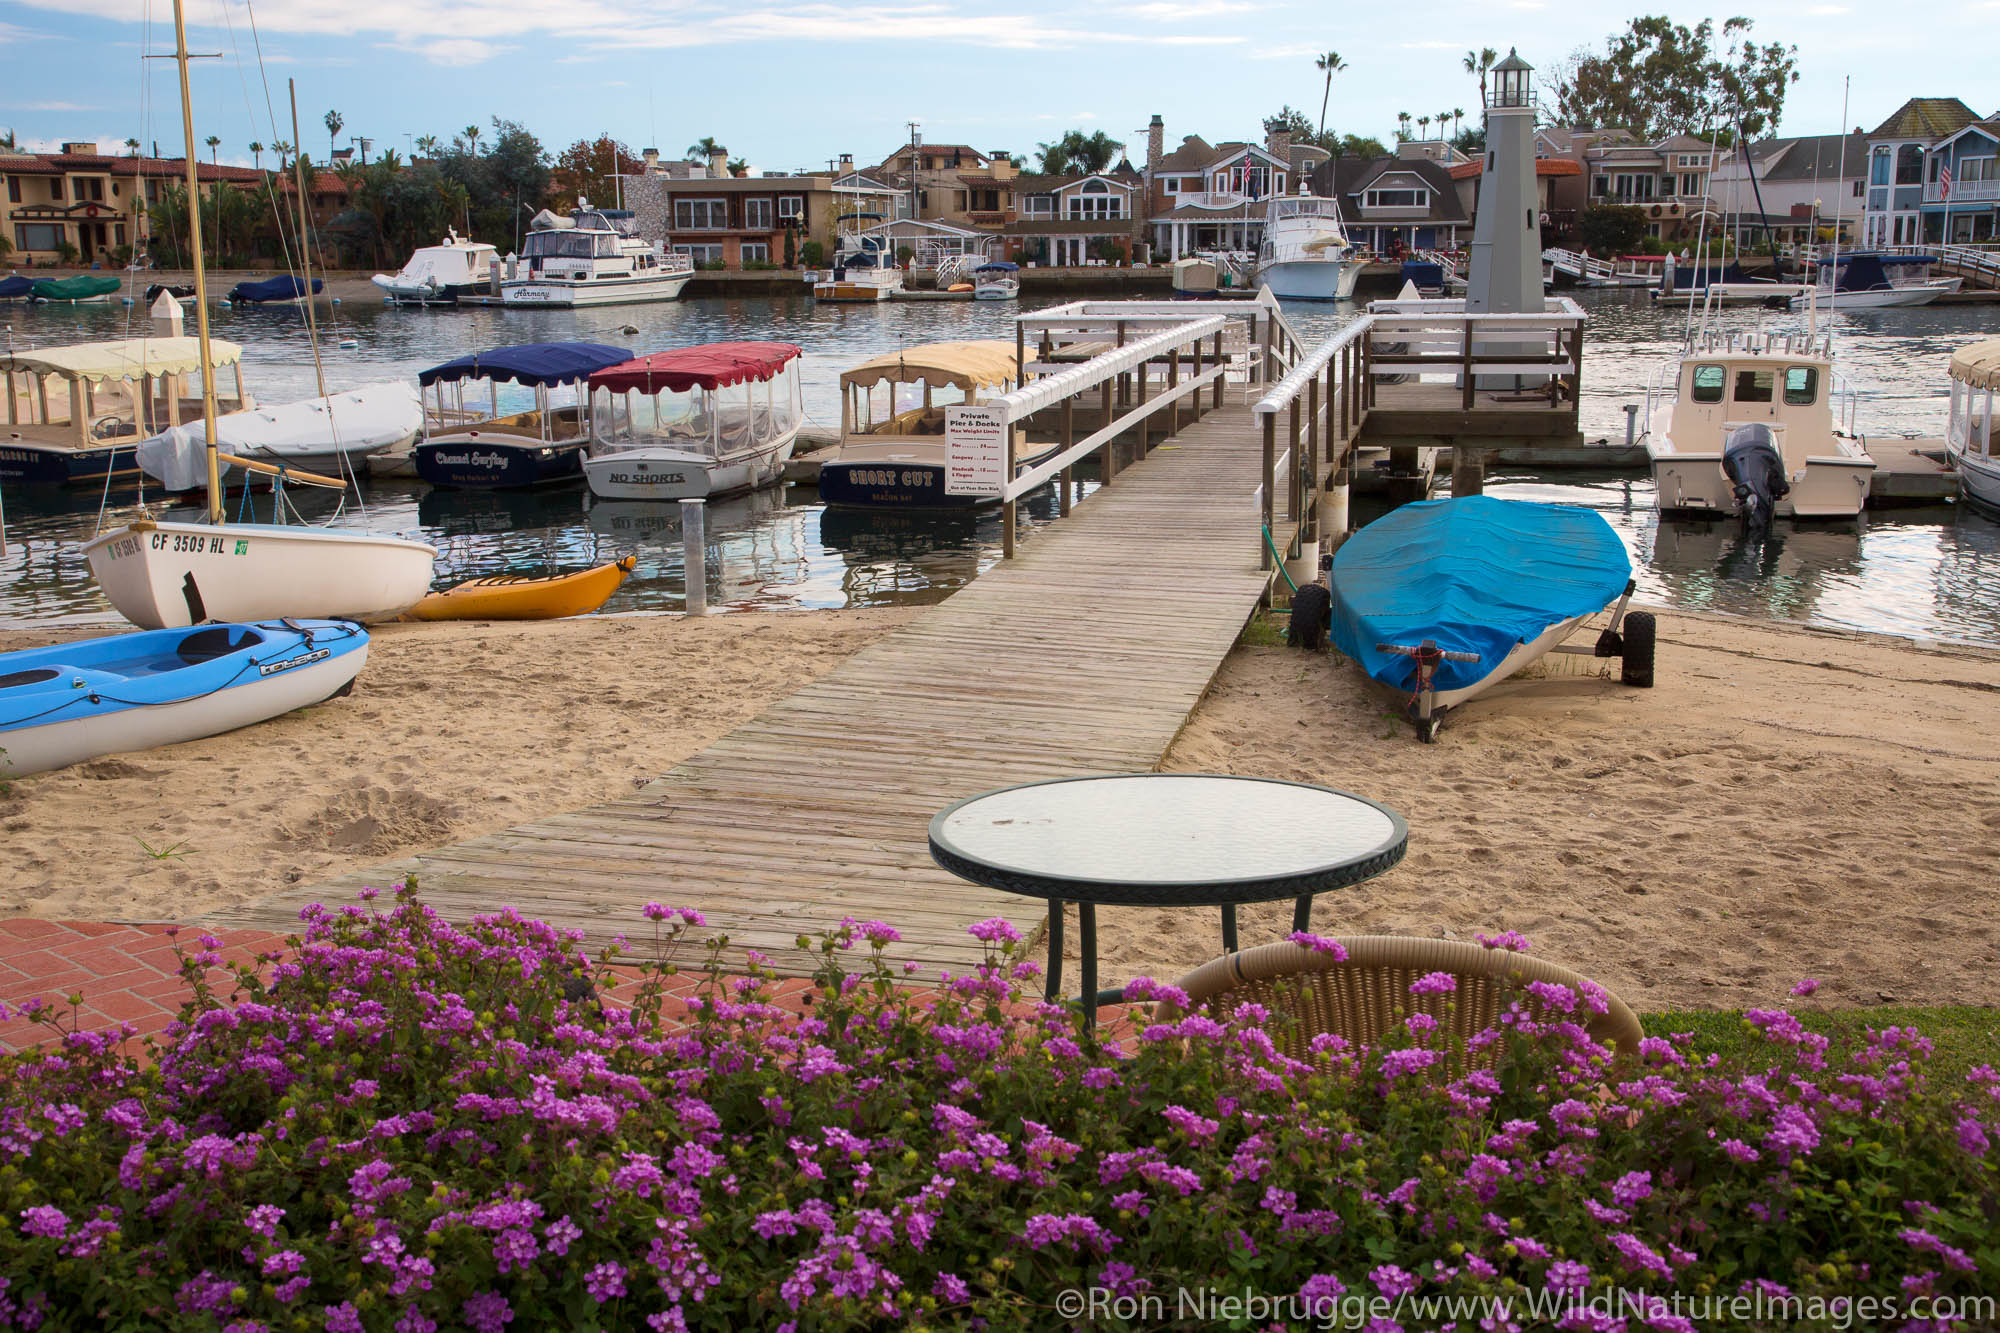 Balboa Island, Newport Beach, Orange County, California.